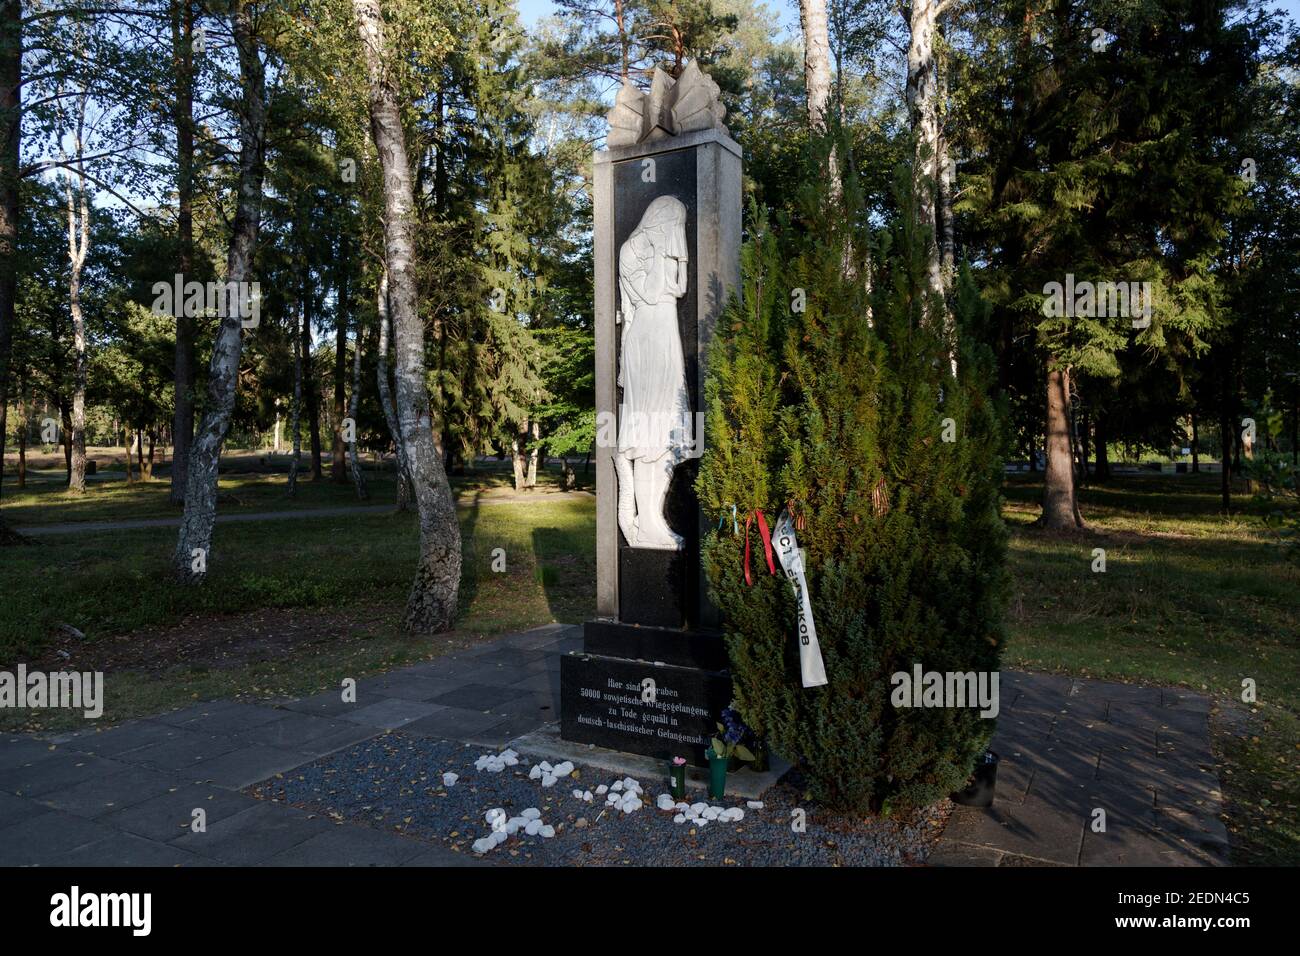 20.09.2020, Lohheide, Basse-Saxe, Allemagne - tombe avec sculpture, zone d'entrée, cimetière de prisonniers de guerre du mémorial de Bergen-Belsen. Couchez-vous sur le côté Banque D'Images